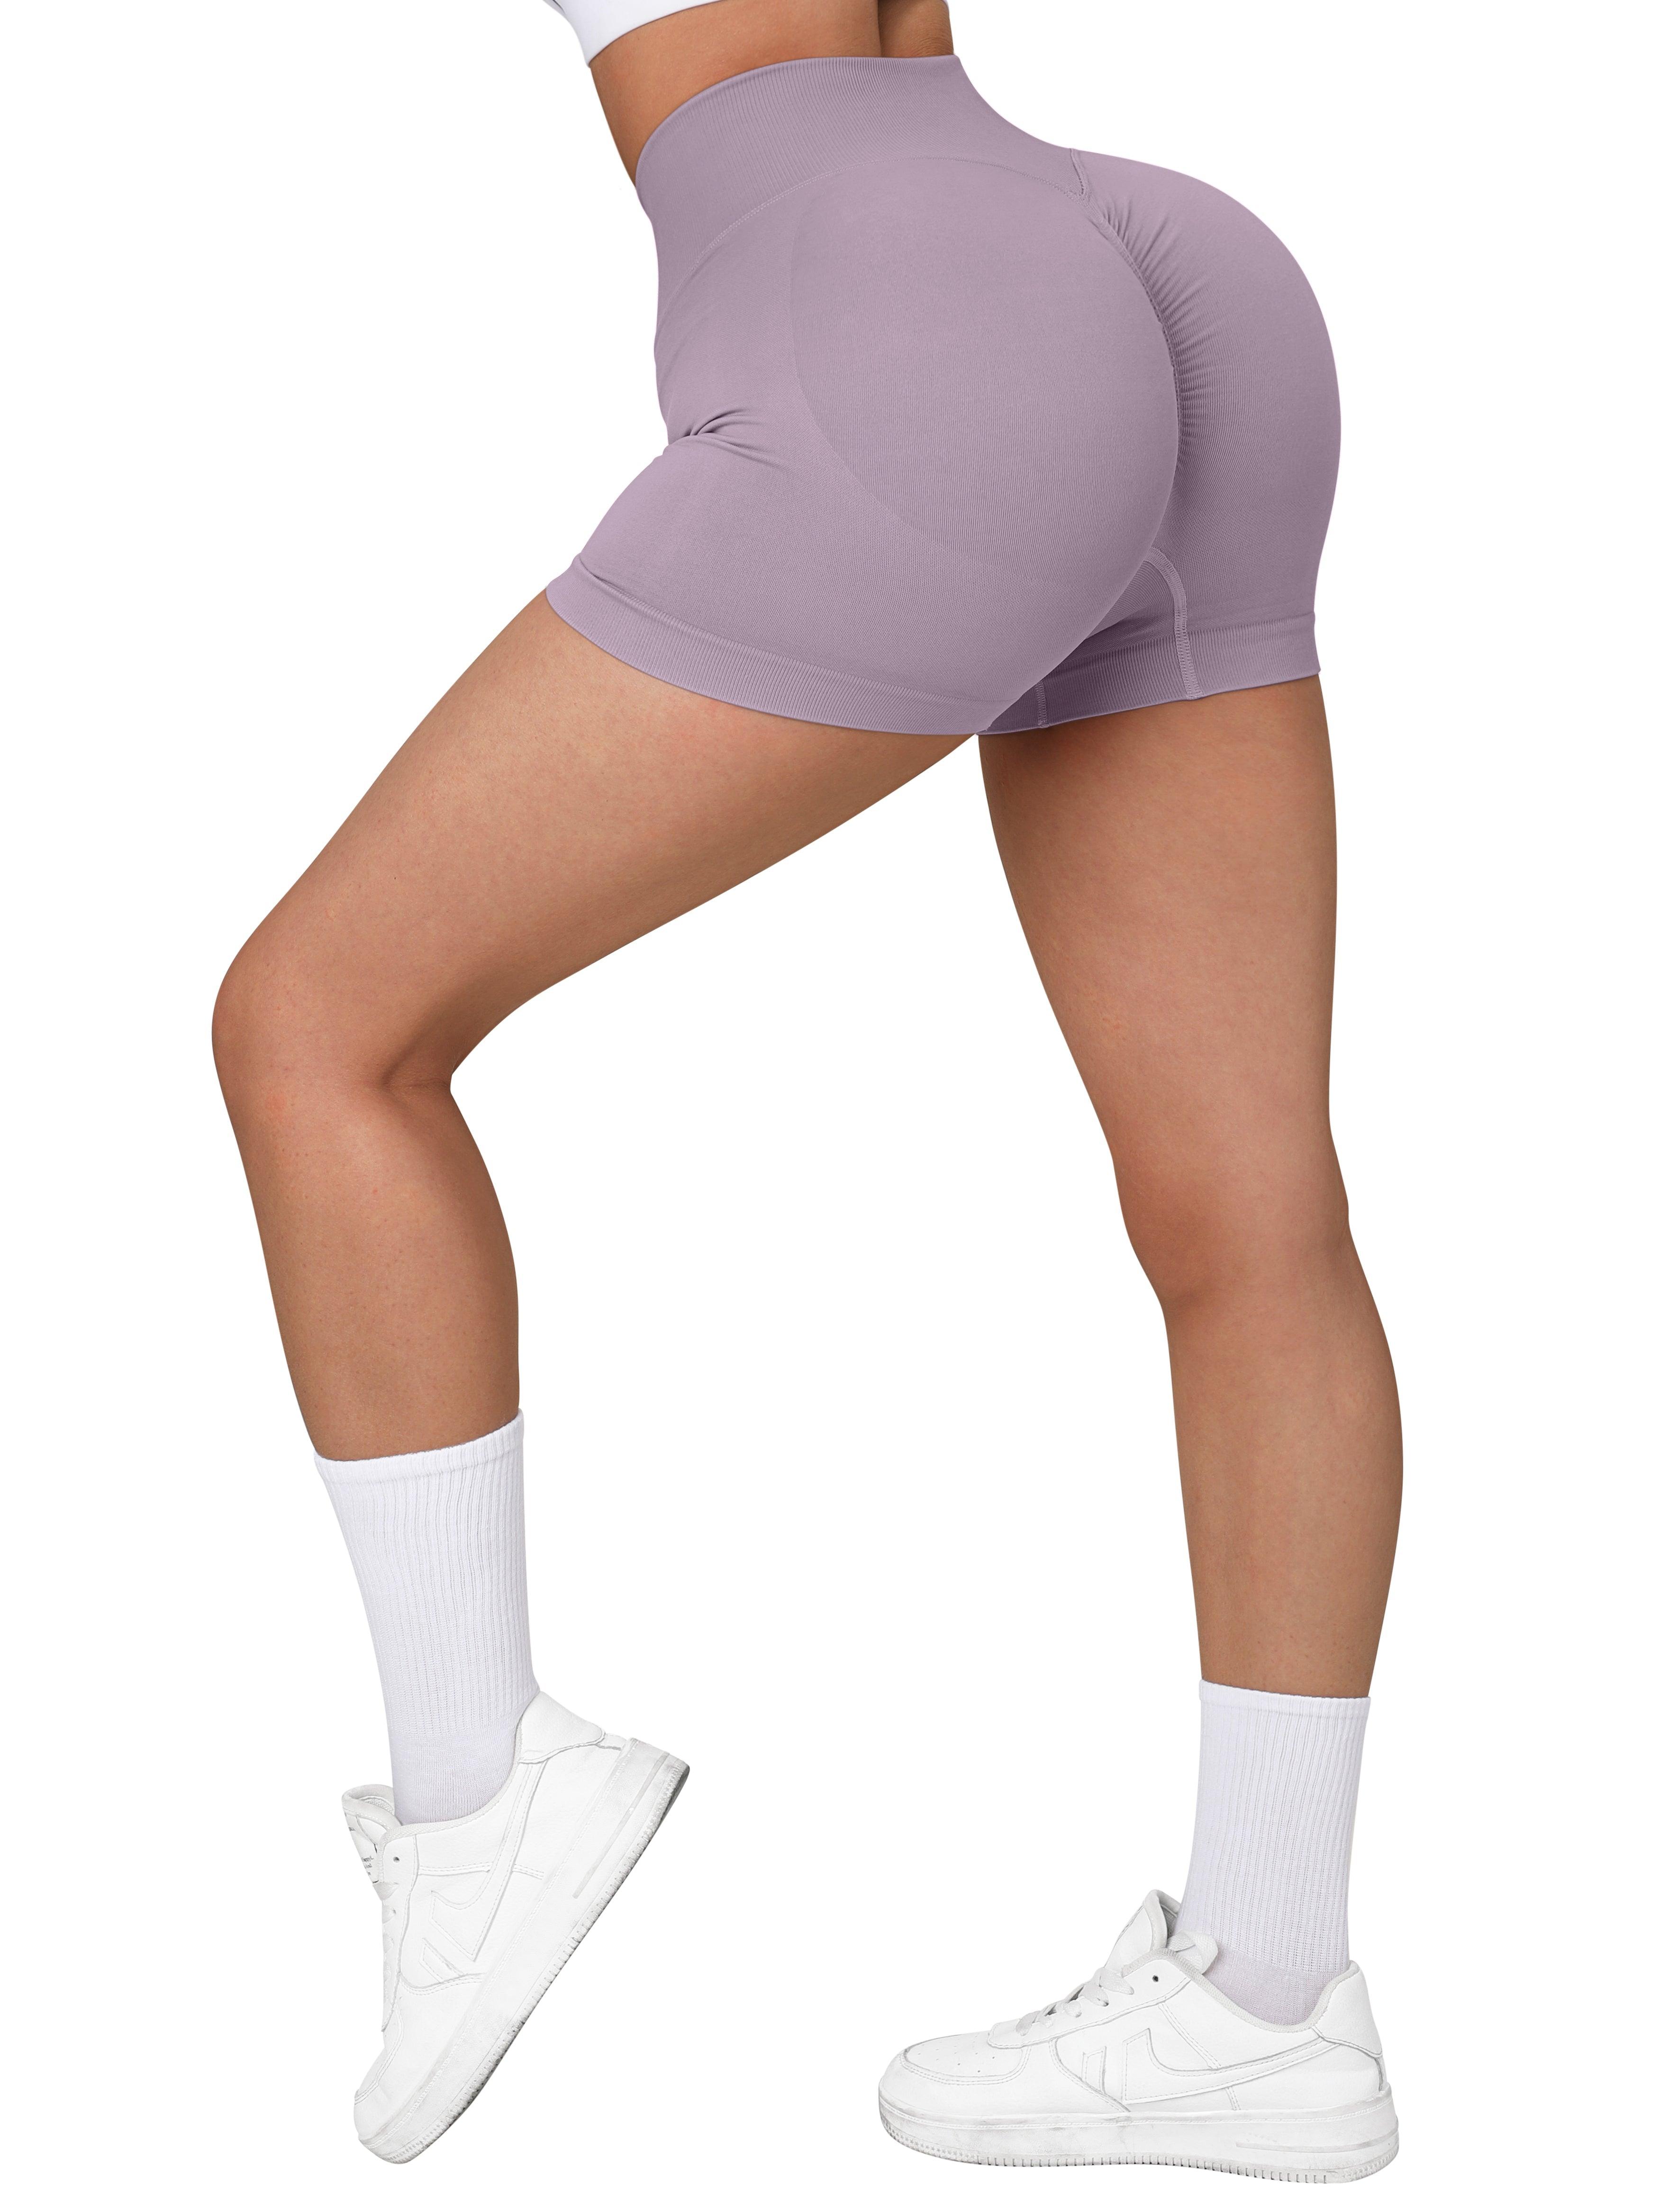 YYDGH Scrunch Butt Lifting Workout Shorts for Women High Waisted Butt Lift  Yoga Gym Seamless Booty Shorts Light Blue S